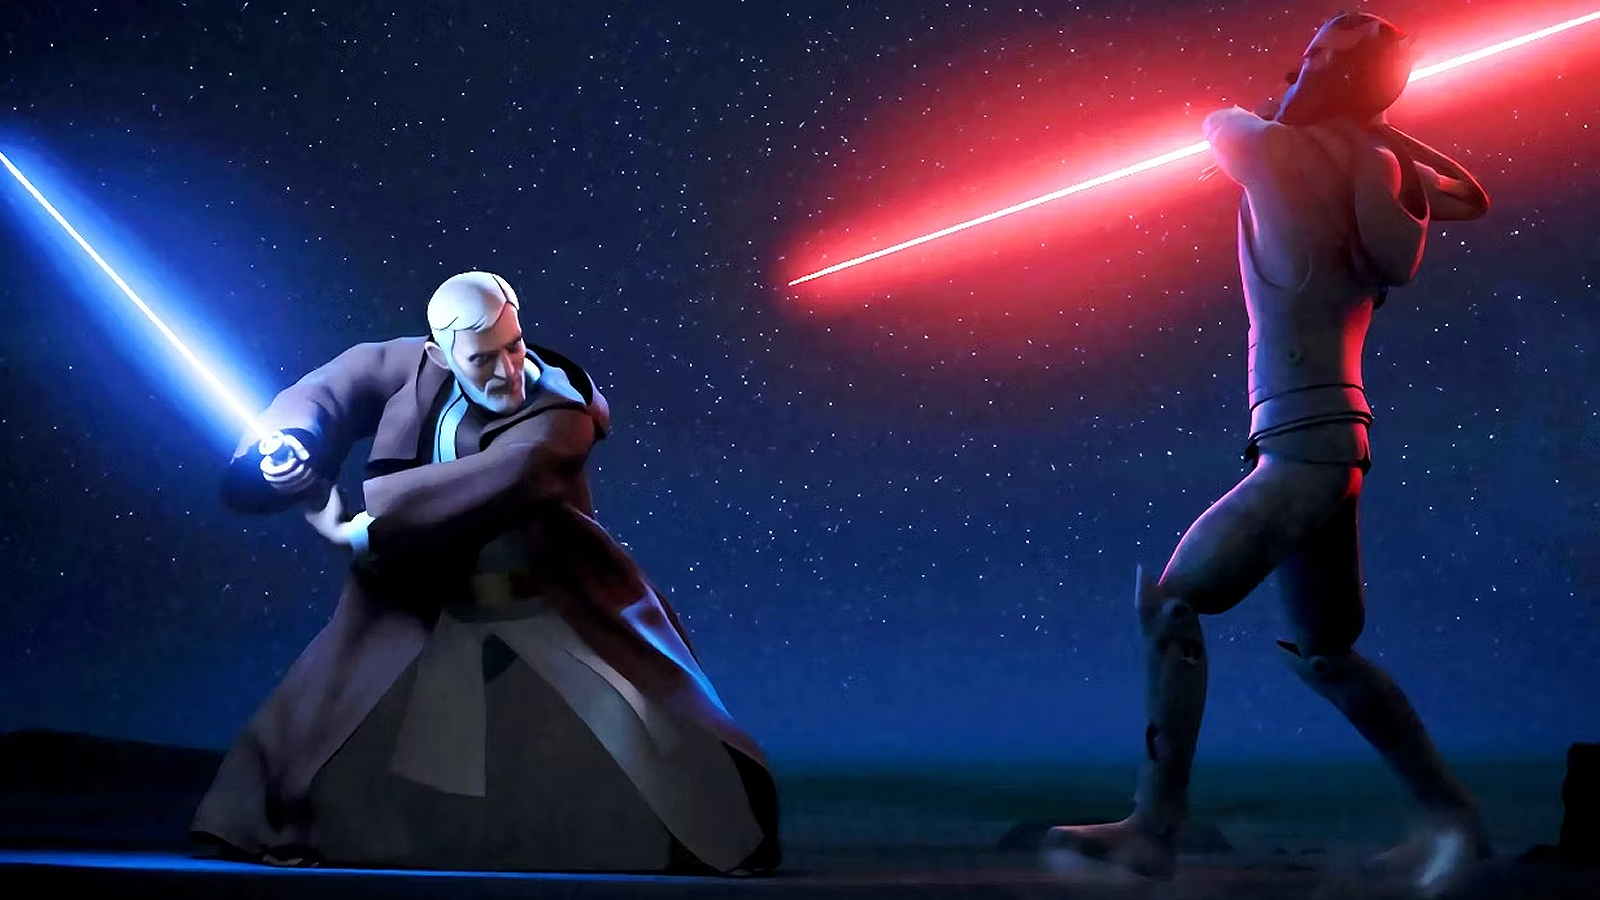 Obi-Wan Kenobi vs. Darth Maul in Star Wars Rebels Season 3, Episode 20, "Twin Suns"